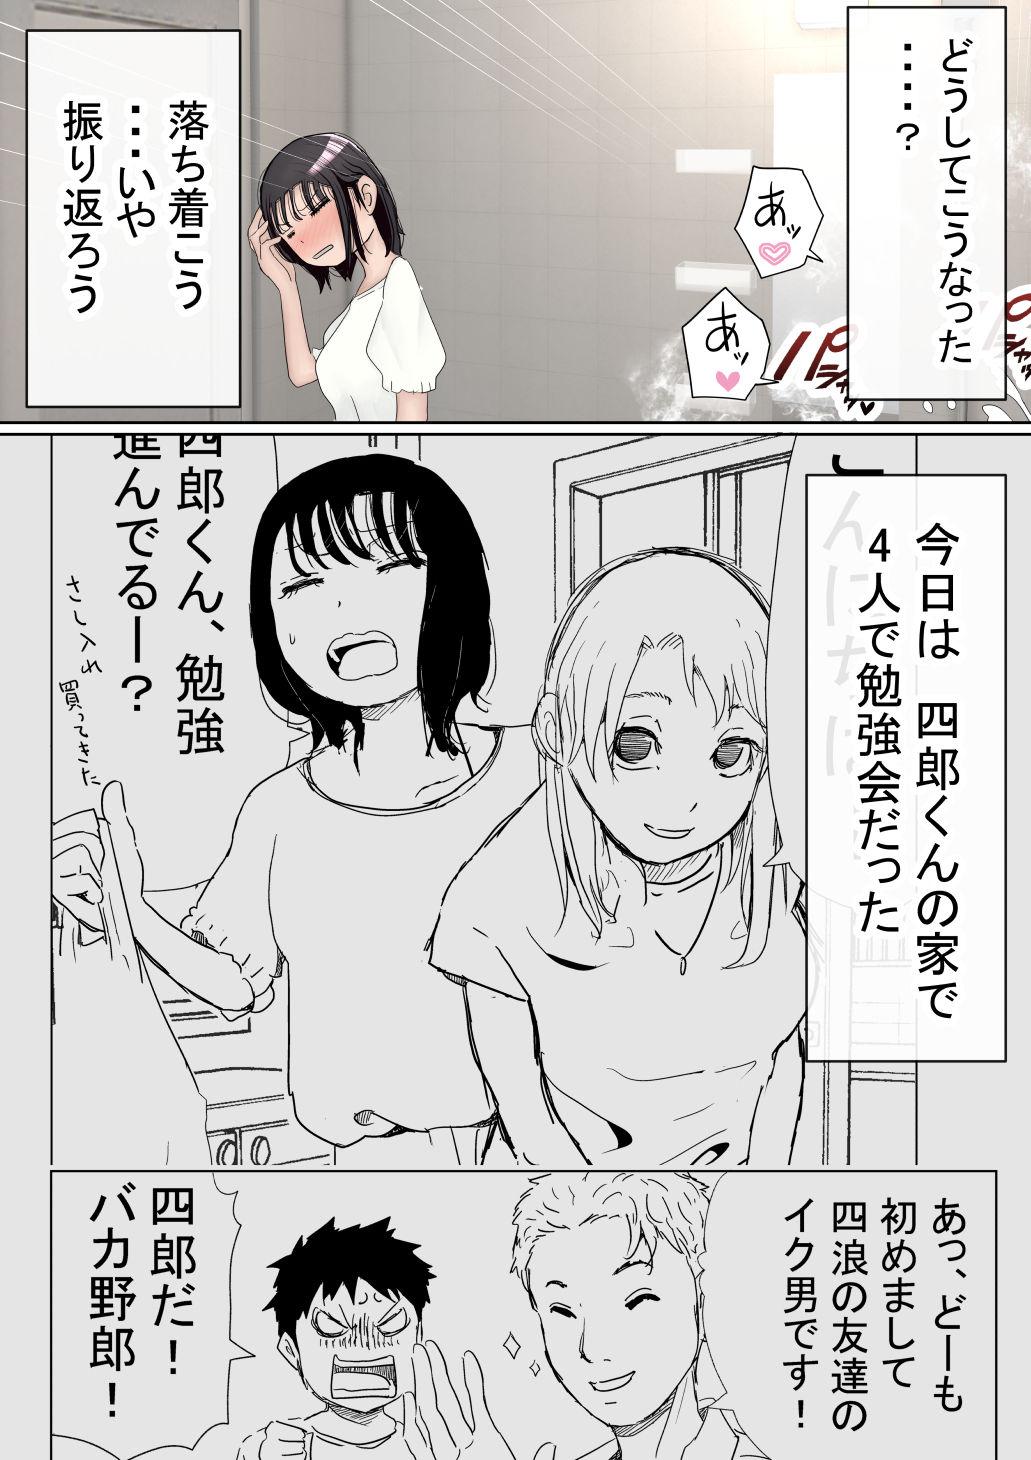 Freaky Ore no Kyonyuu Kanojo ga, Yarichin to Ofuro ni Hairu Koto ni NTR 2 - Original Missionary Position Porn - Page 10